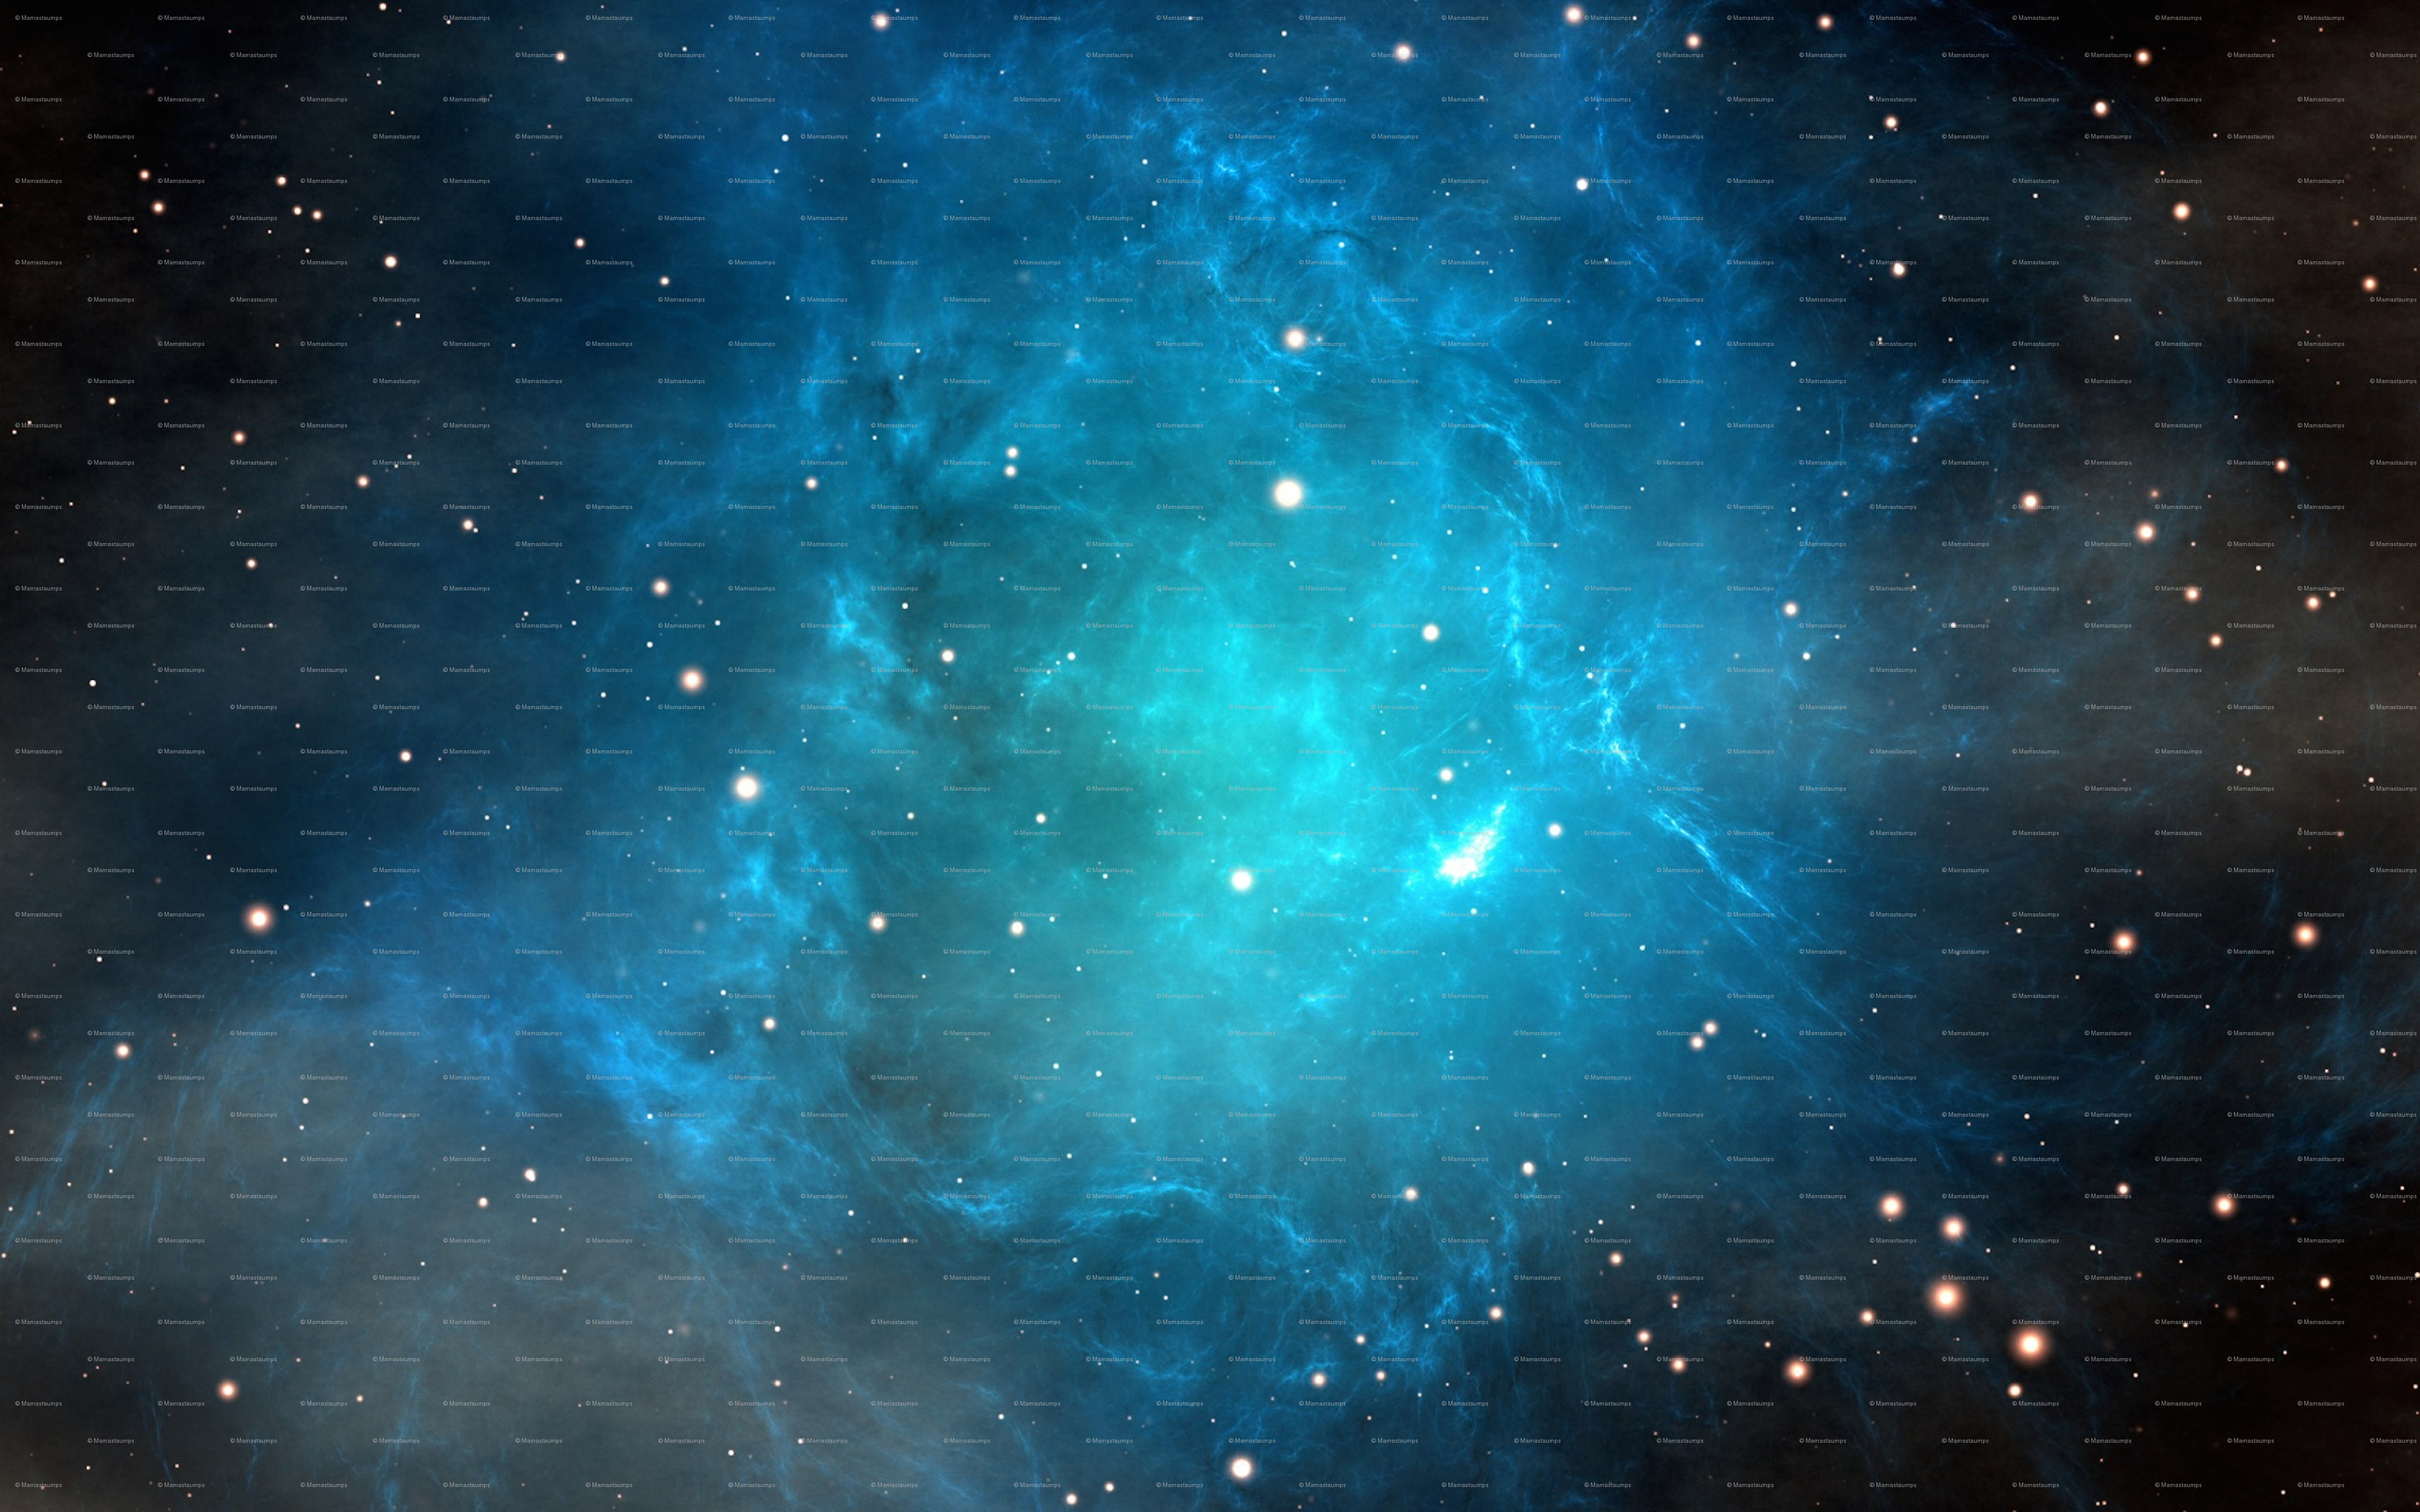 Taurus Nebula , HD Wallpaper & Backgrounds